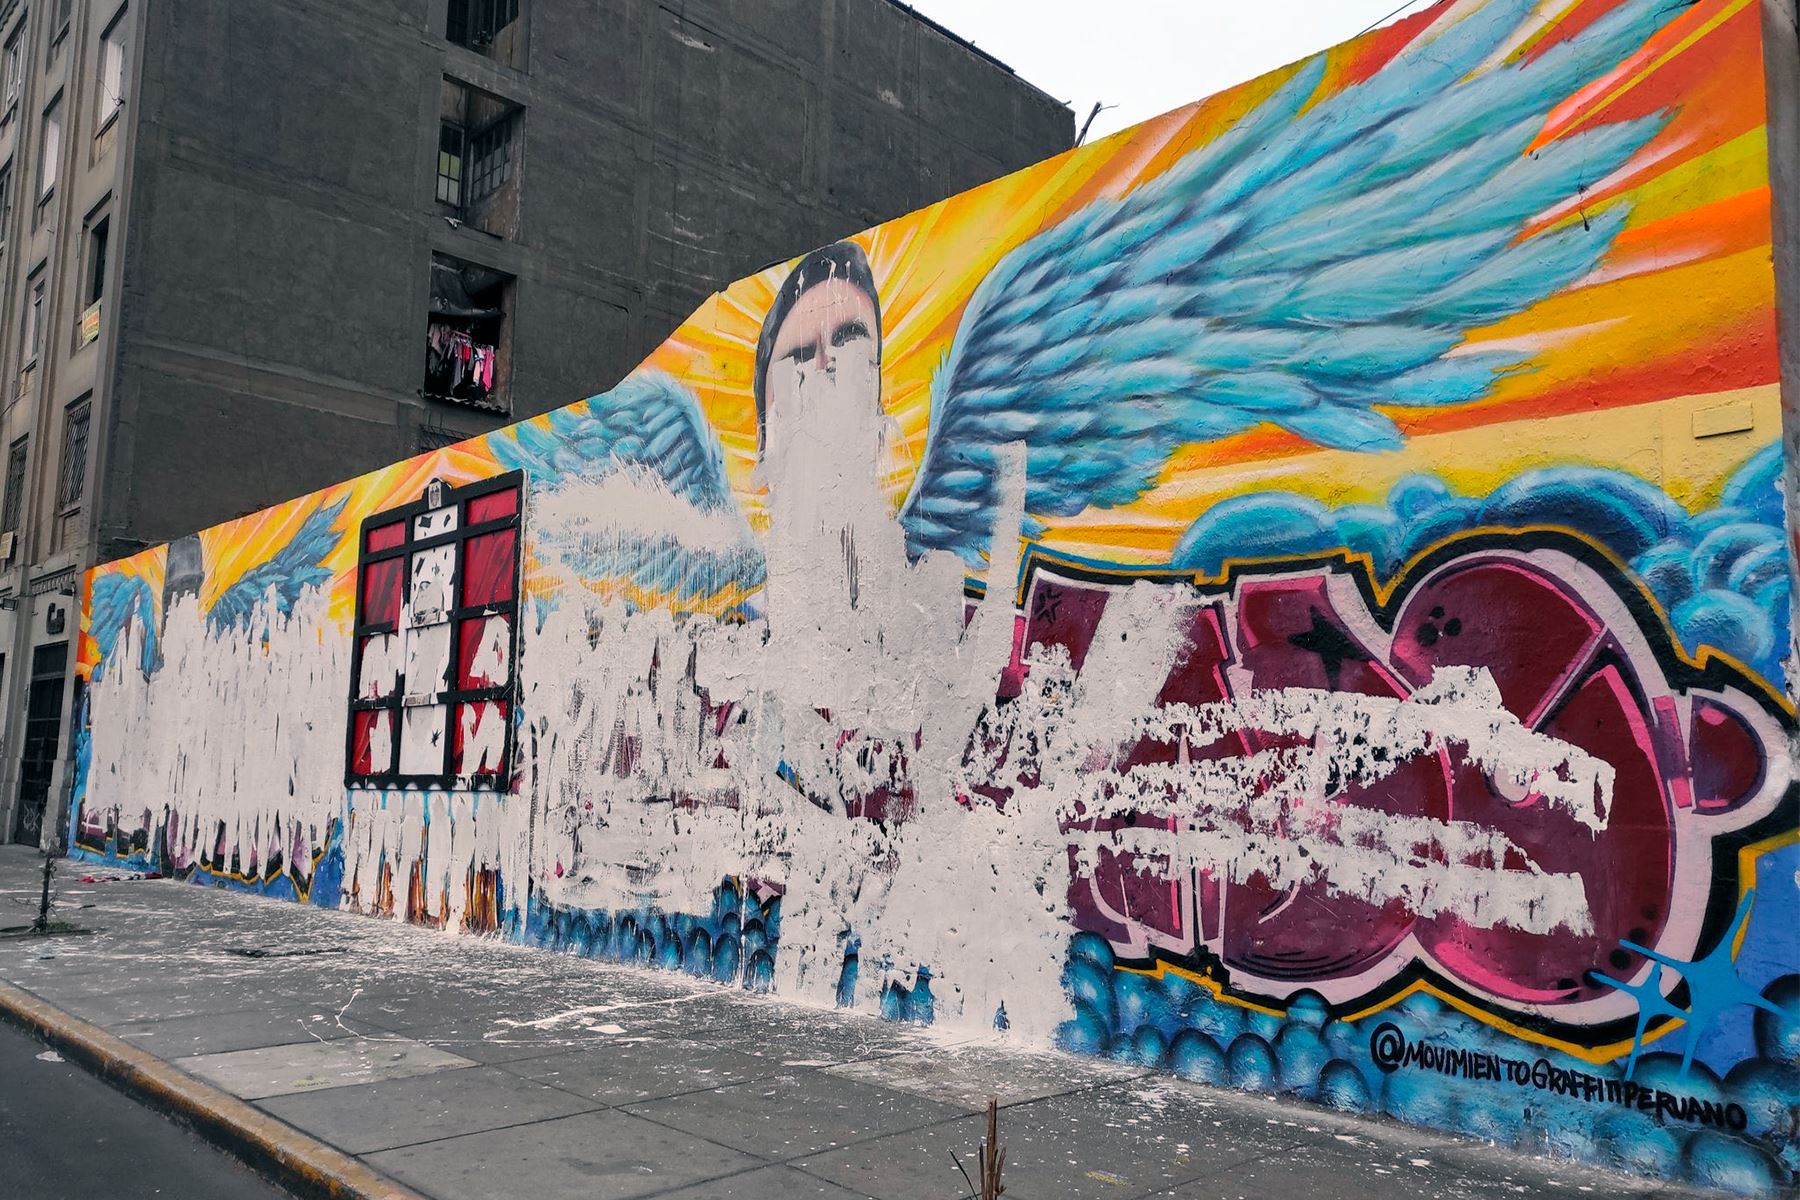 En un comunicado la Municipalidad de Lima anuncia que se repondrá mural destruido. Foto: INTERNET/Medios